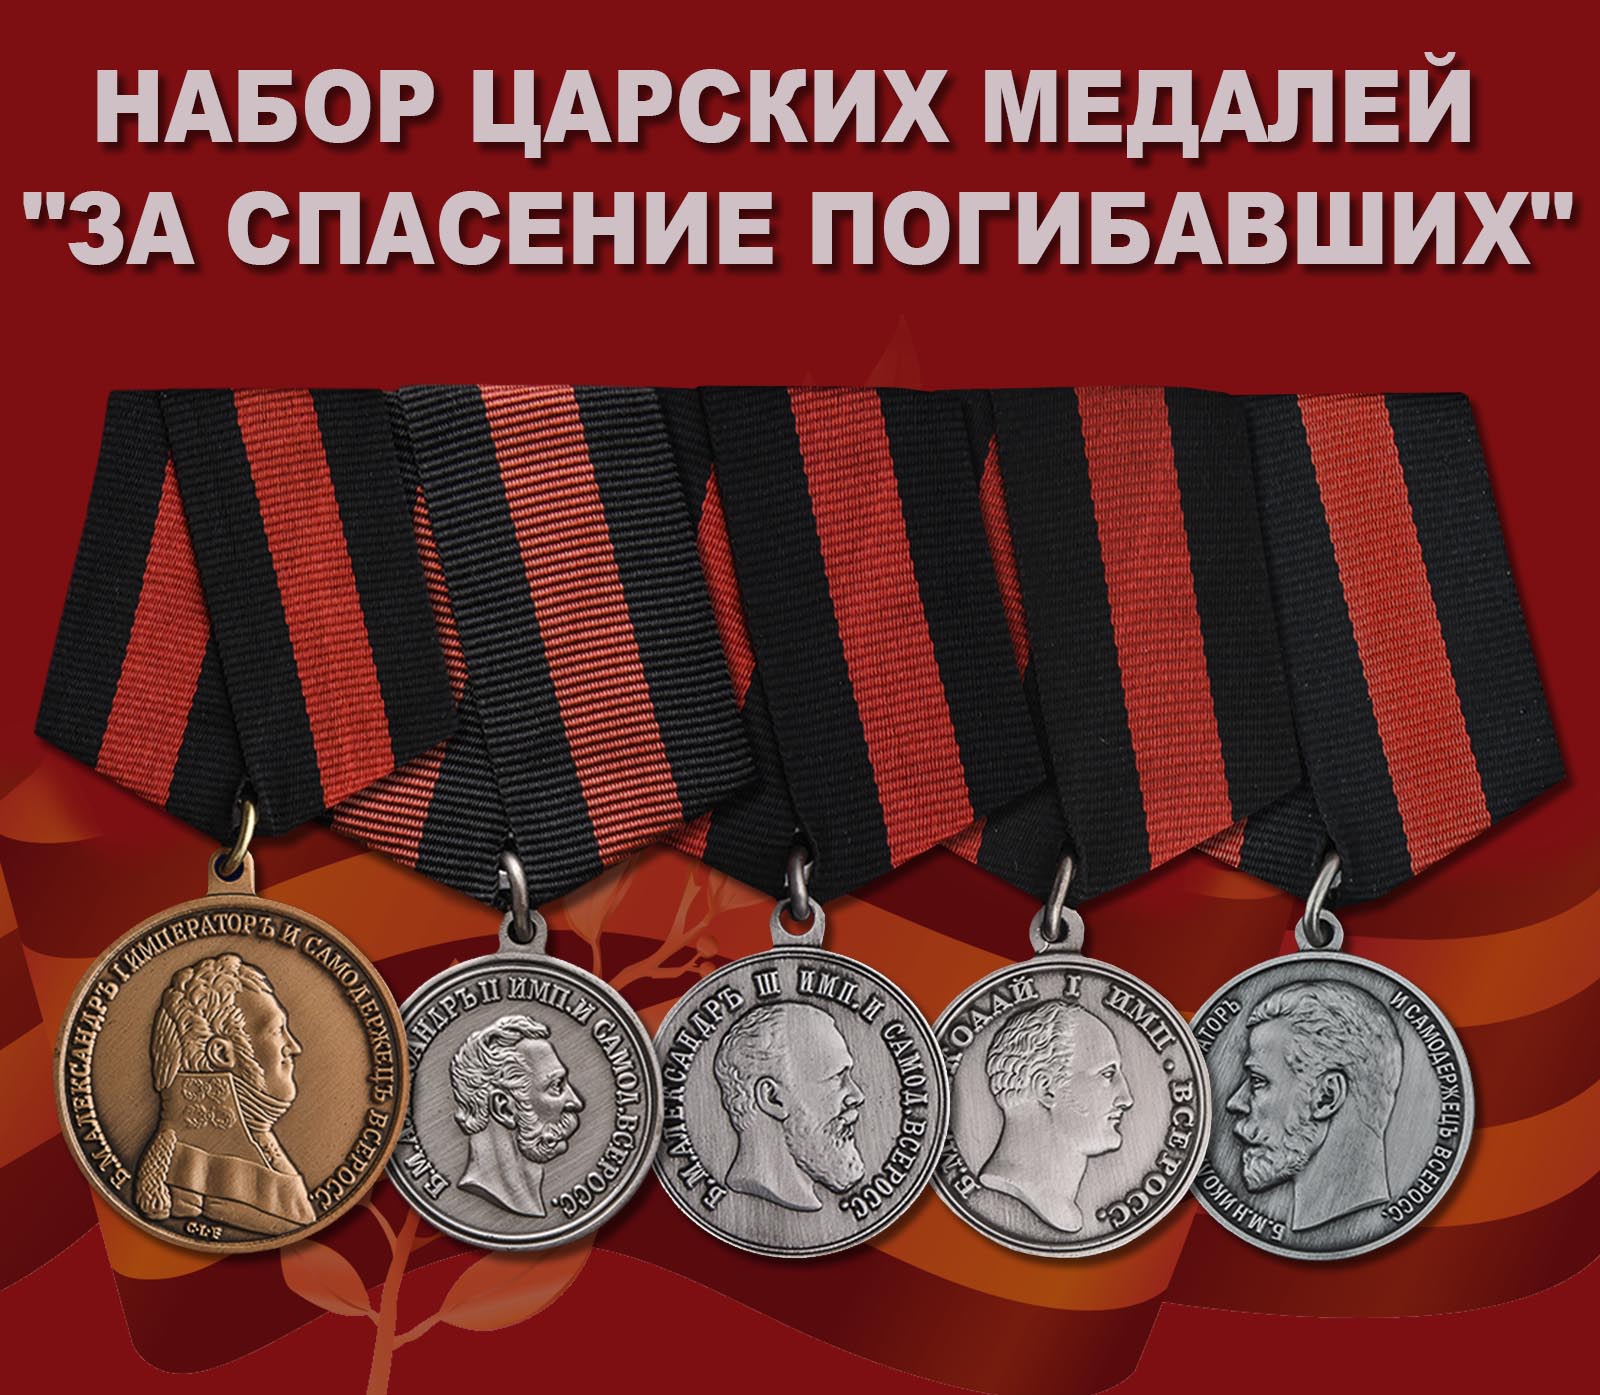 Купить набор царских медалей "За спасение погибавших"